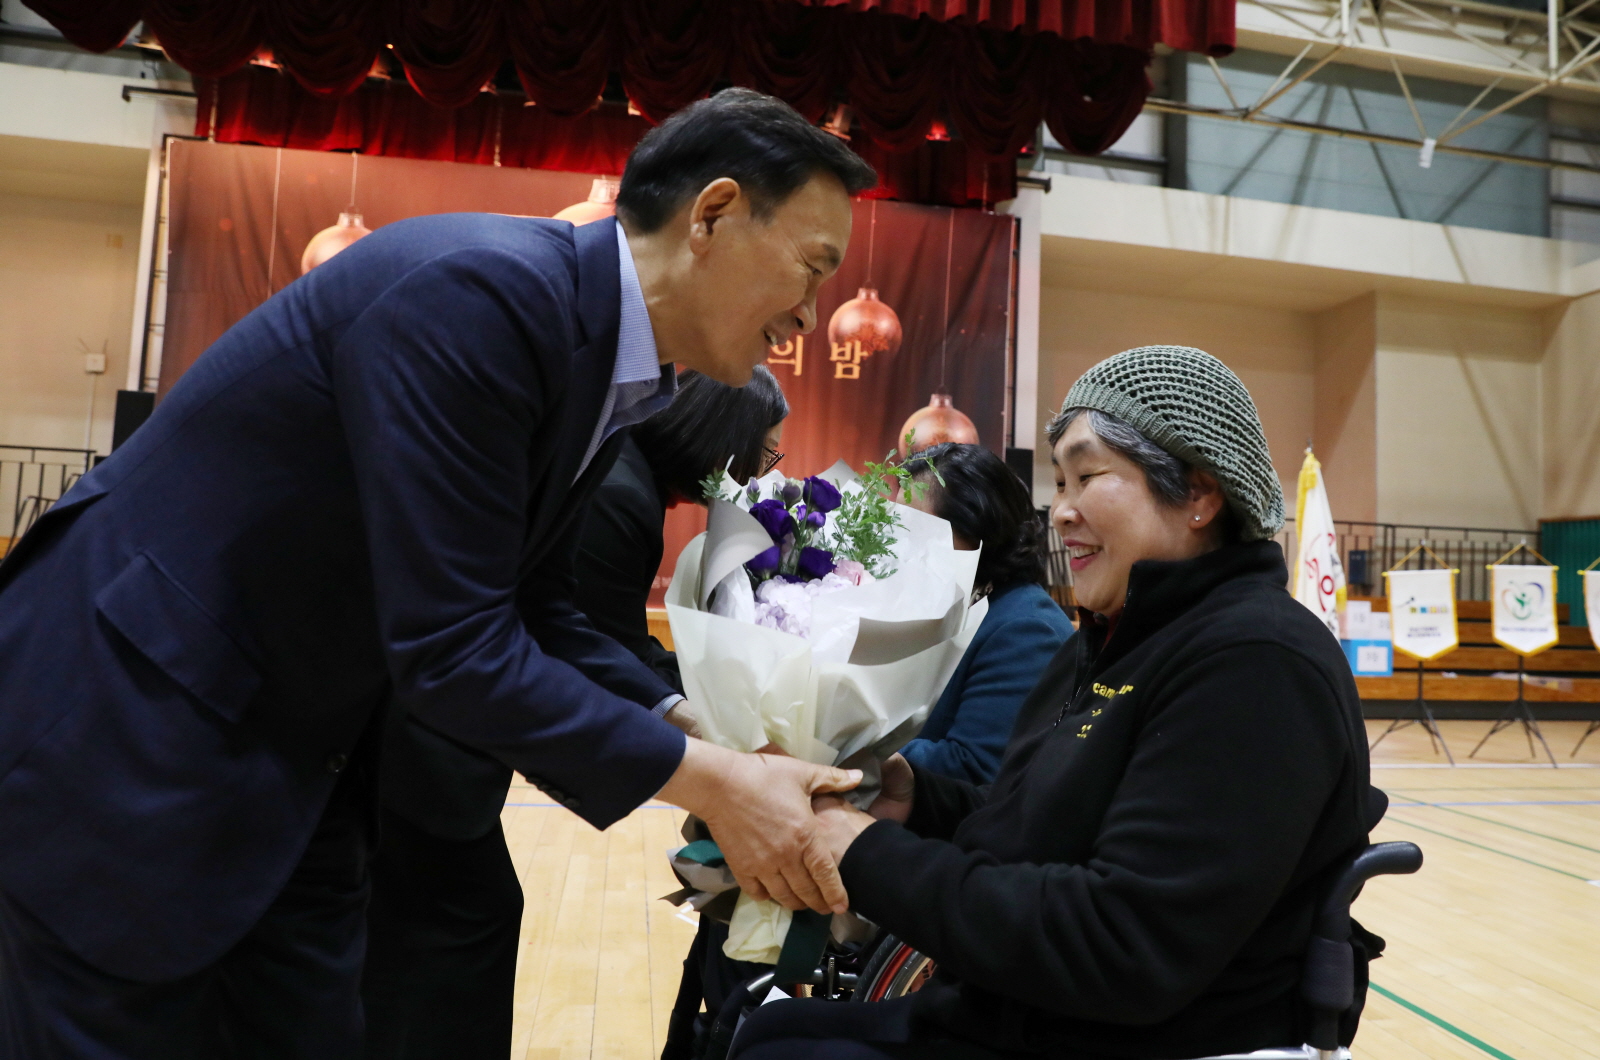 ‘강남구 장애인체육인의 밤’ 축하!